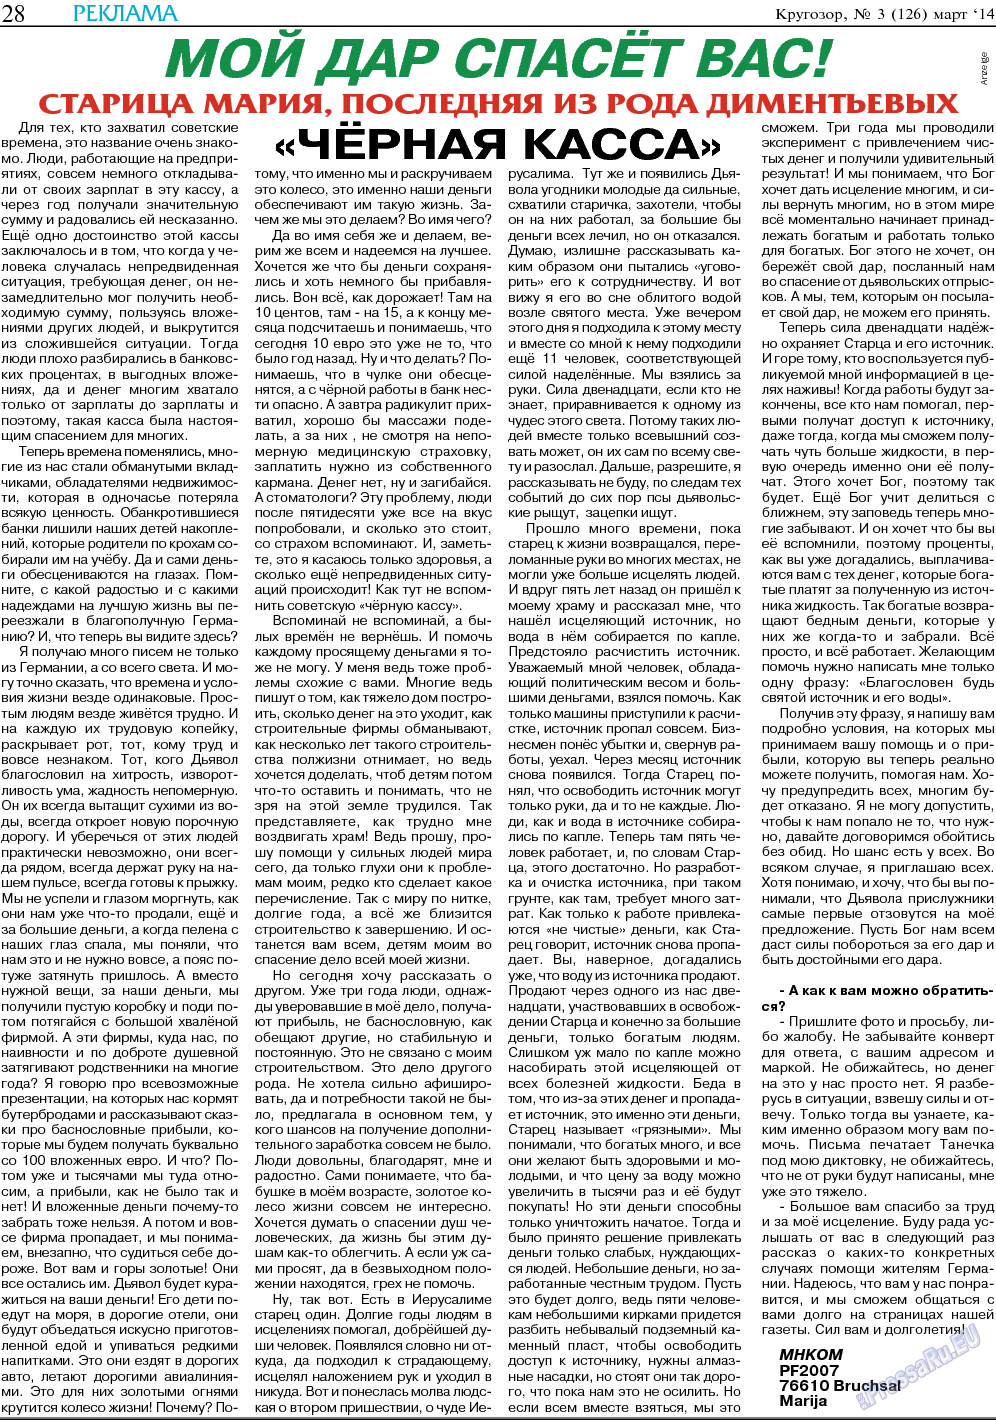 Кругозор, газета. 2014 №3 стр.28